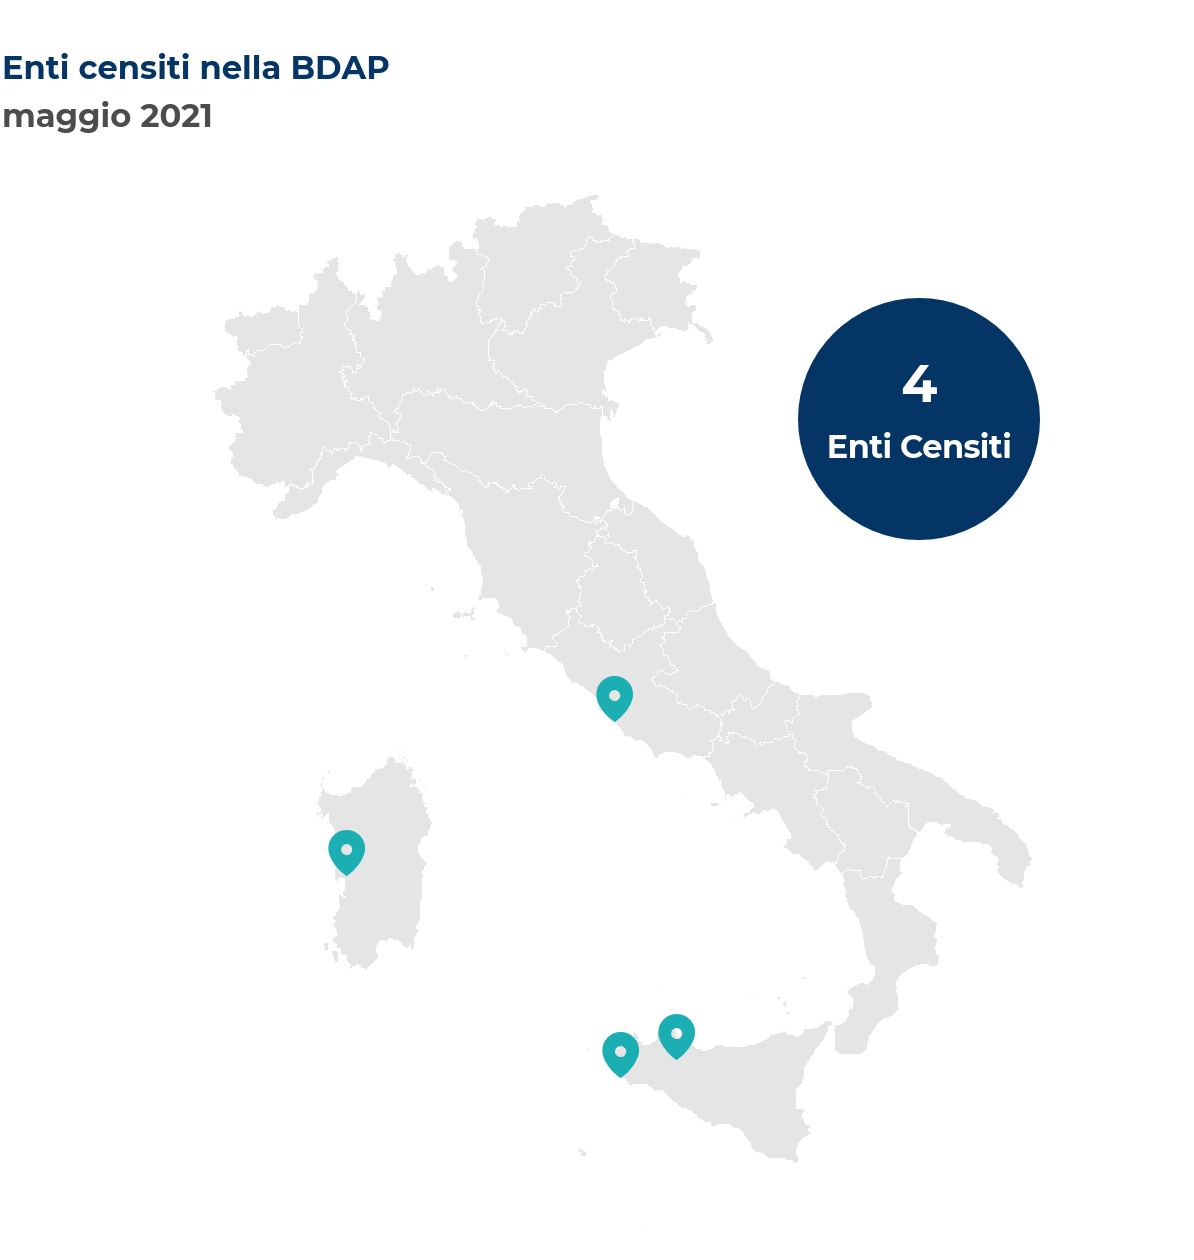 Mappa dell'Italia che mostra la localizzazione degli enti censiti nella BDAP. Nel mese di maggio 2021 sono stati censiti 4 nuovi enti così distribuiti per regione: Lazio un ente; Sardegna un ente; Sicilia due enti.